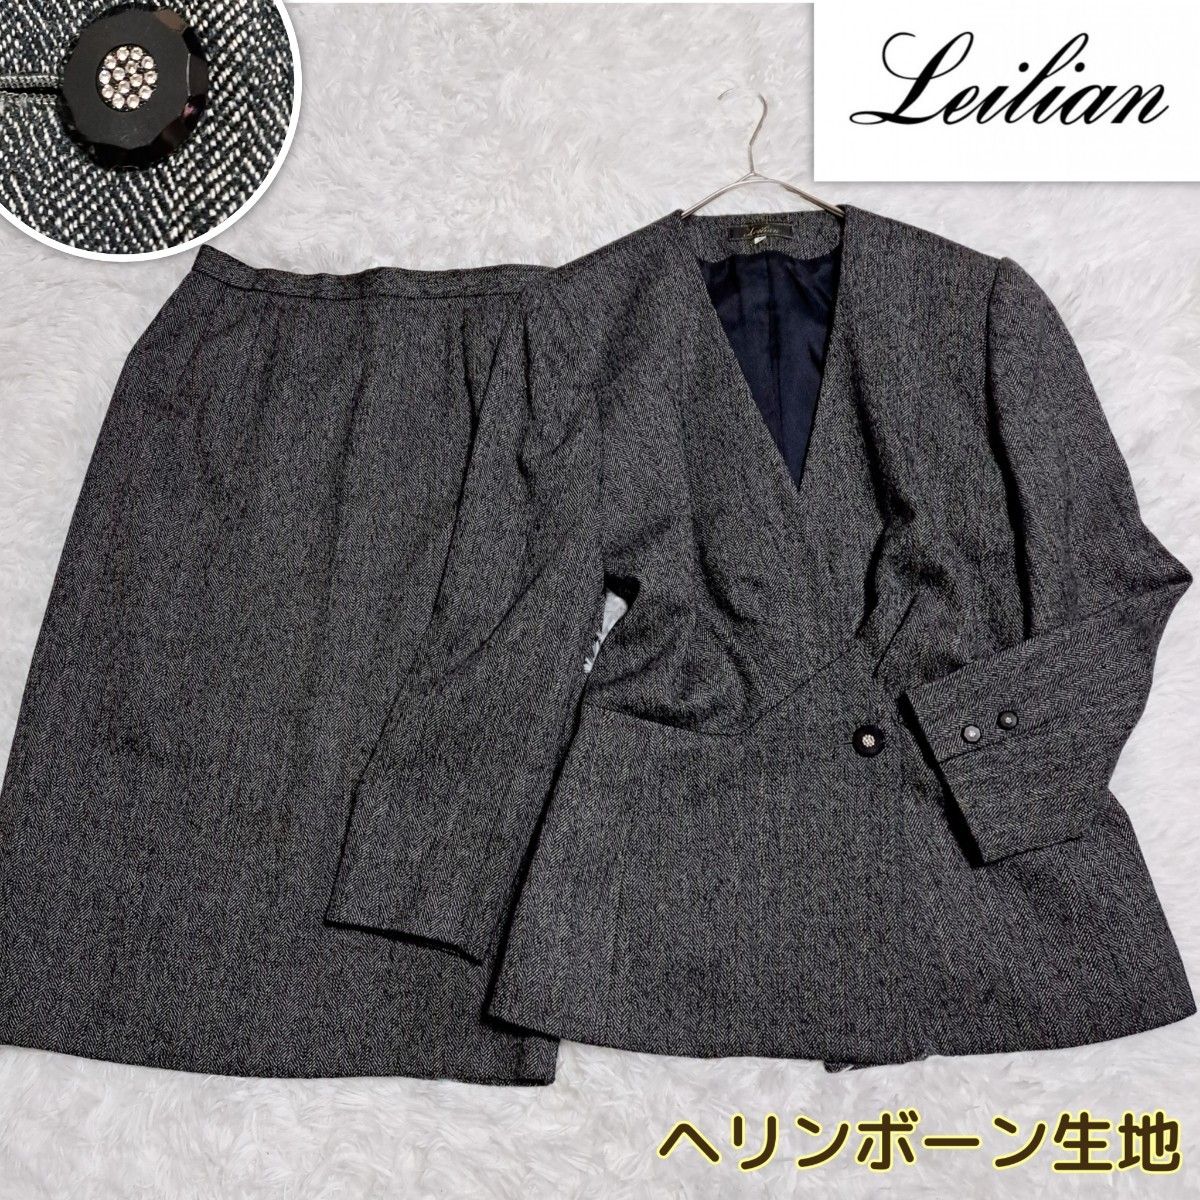 Leilian レリアン 高級 ヘリンボーン生地 セットアップ スーツ 9号 M スカートスーツ 式